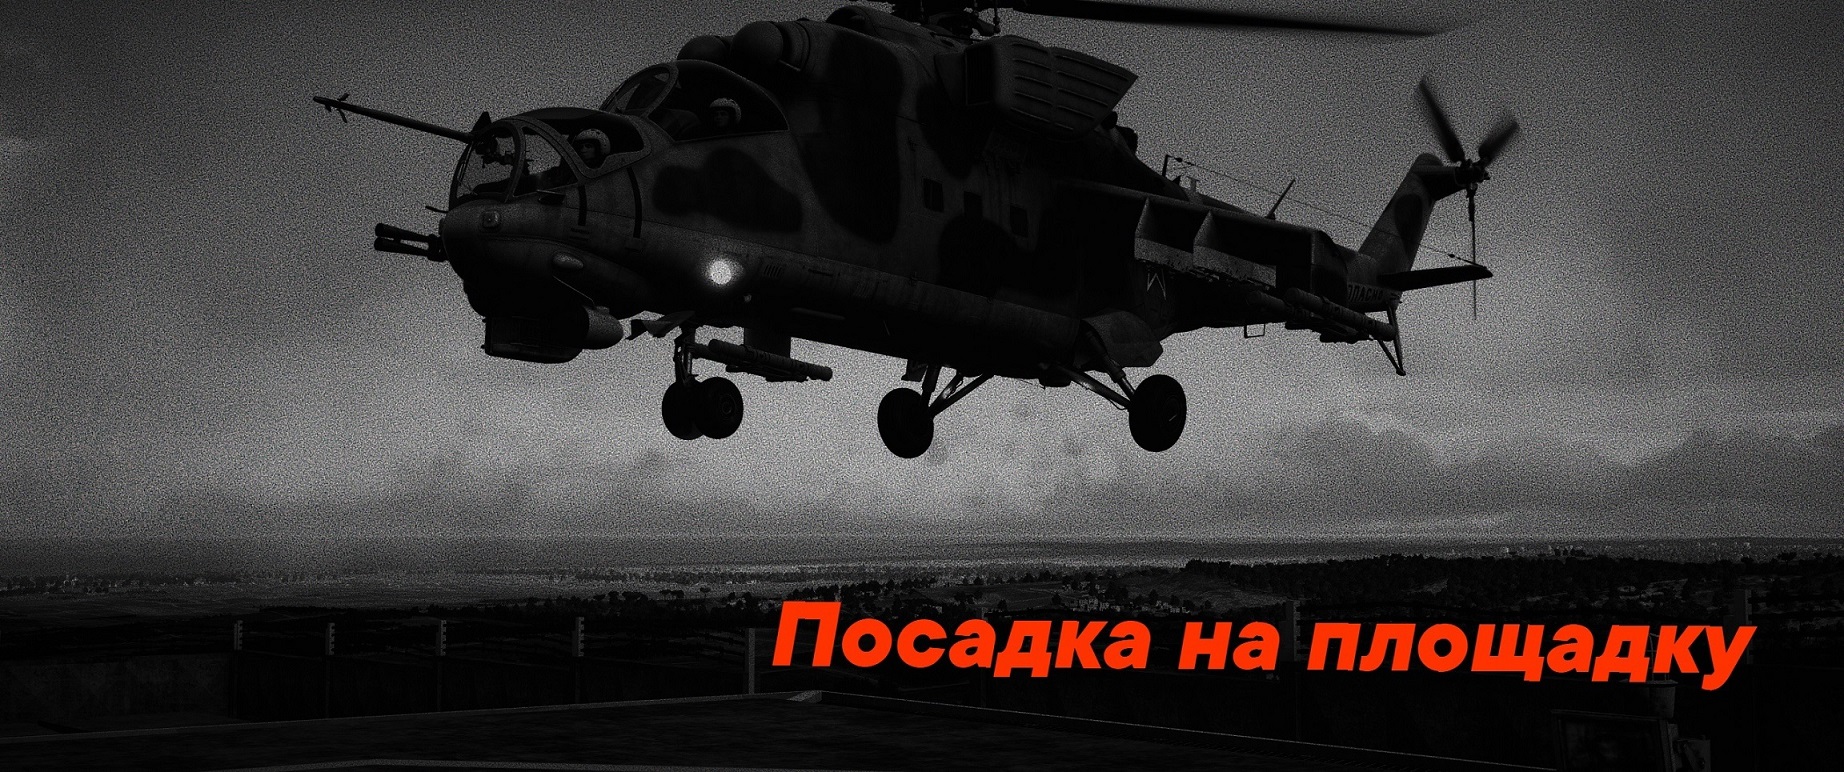 Отработка захода на площадку на Ми-24П [Hind landing training mission]